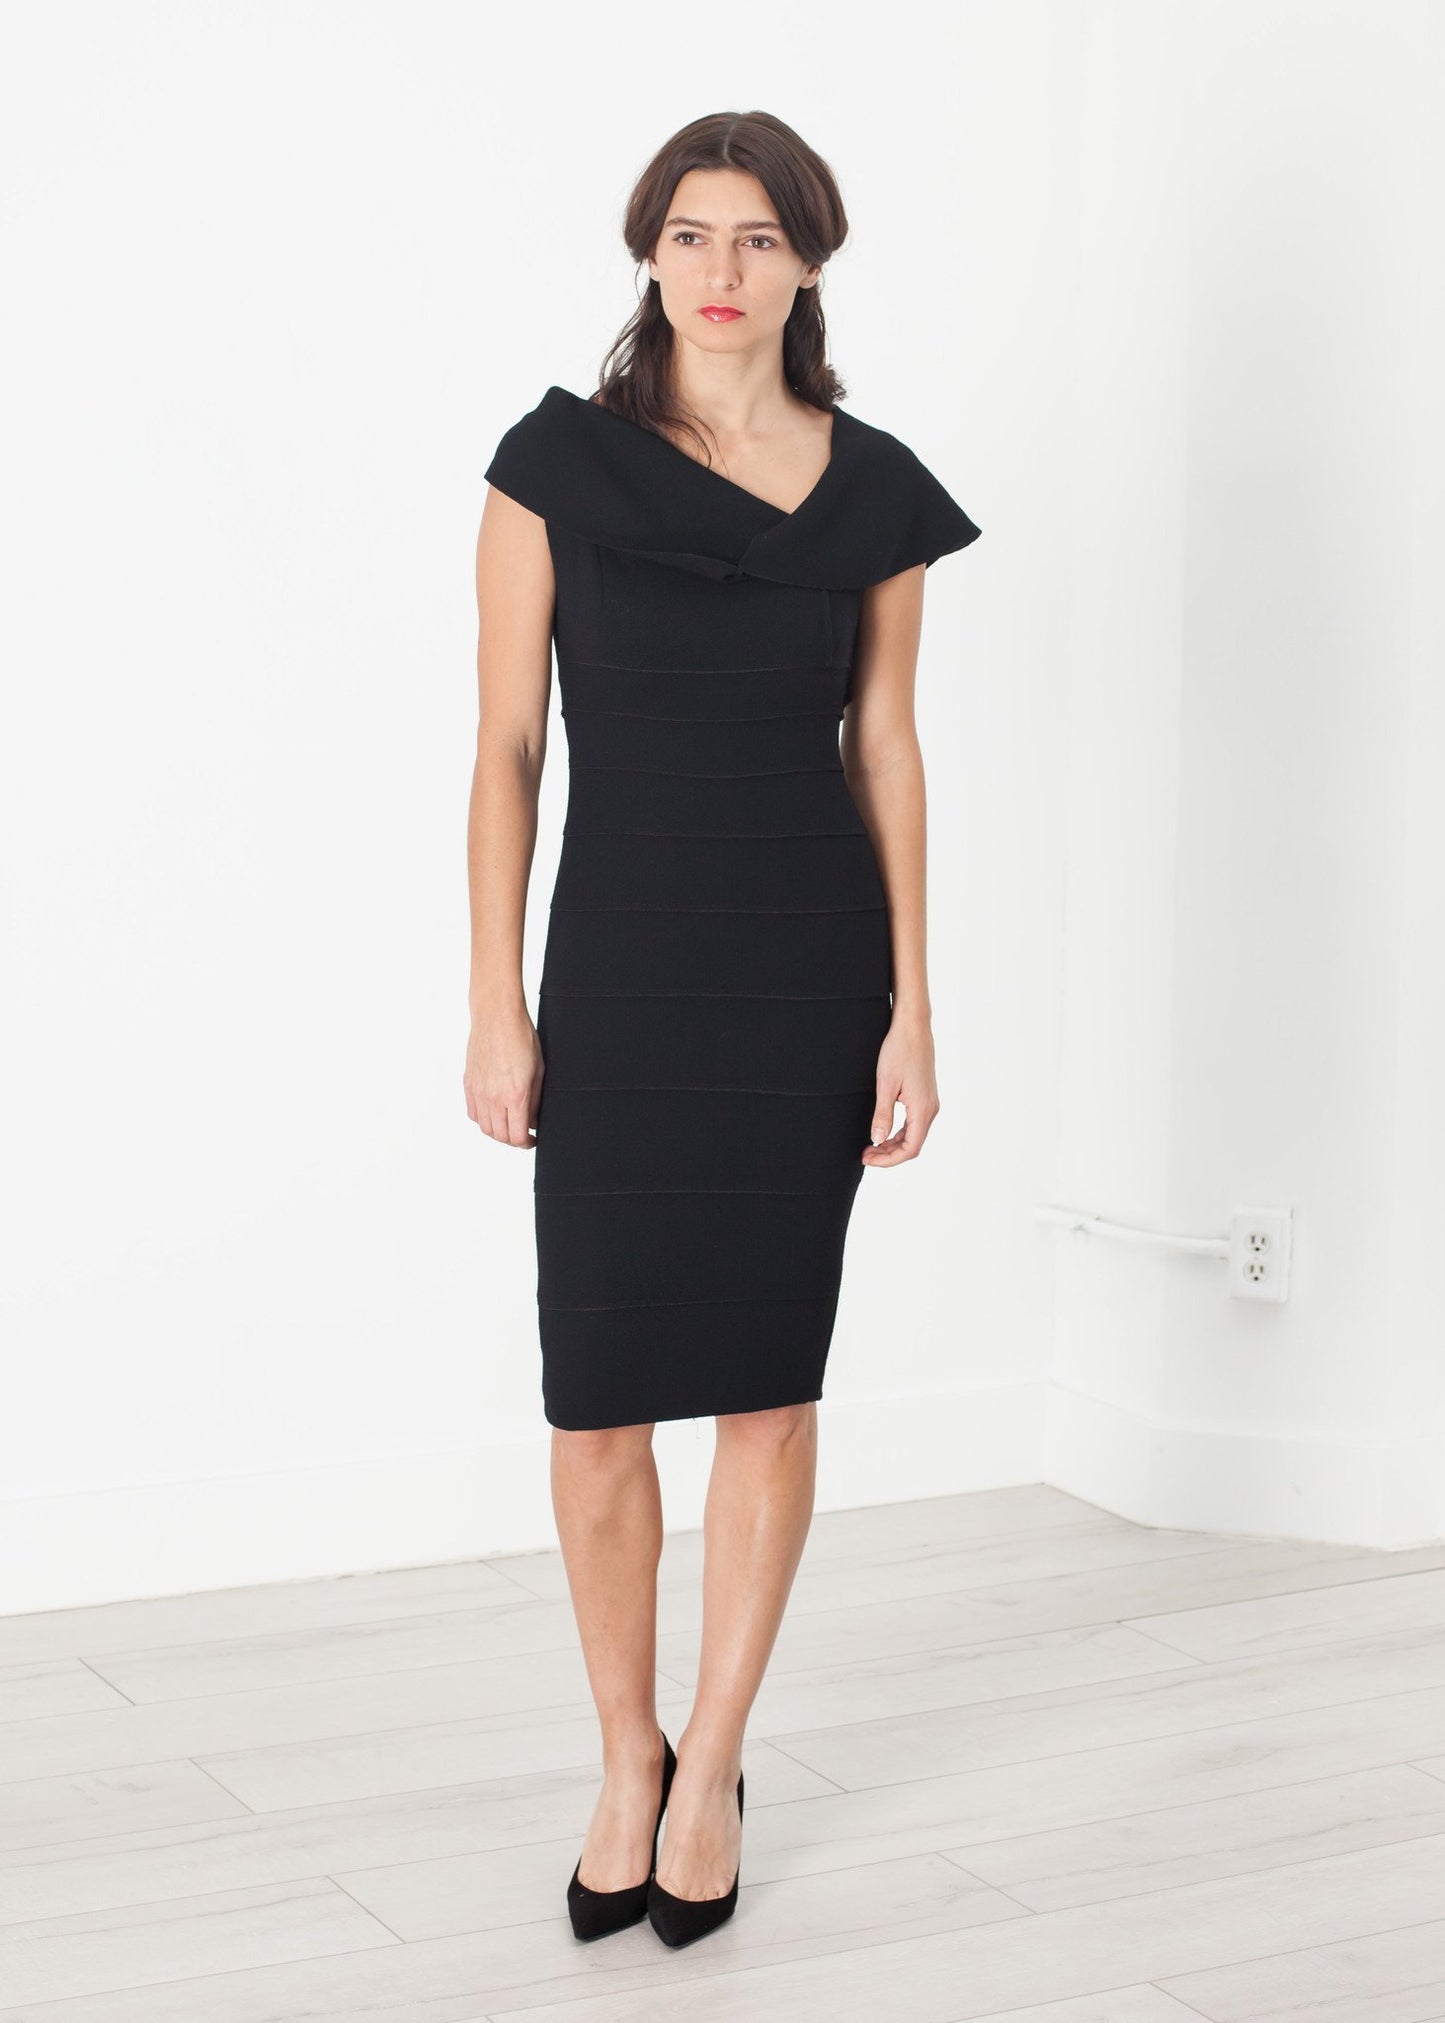 Asymmetric Dress in Black - annaclothes